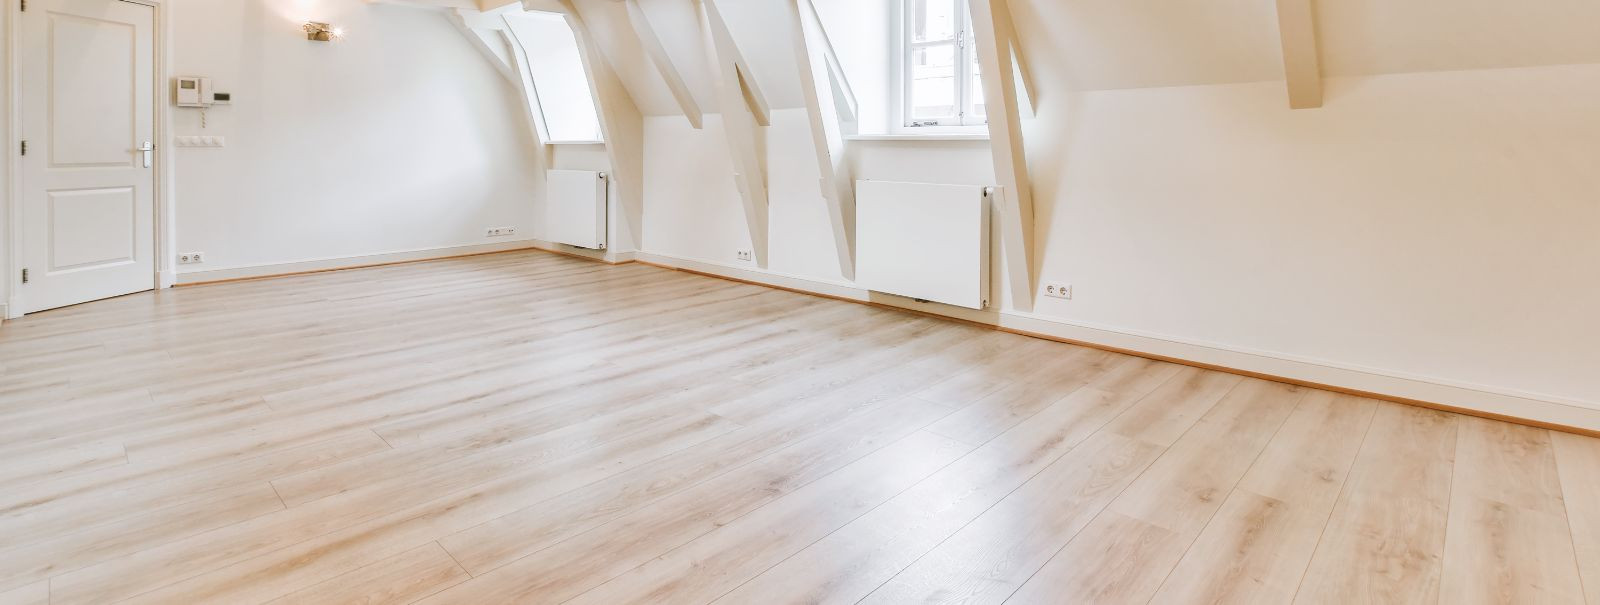 Eritellimusel põrandakate on spetsiaalselt sinu kodu mõõtmetele, ...